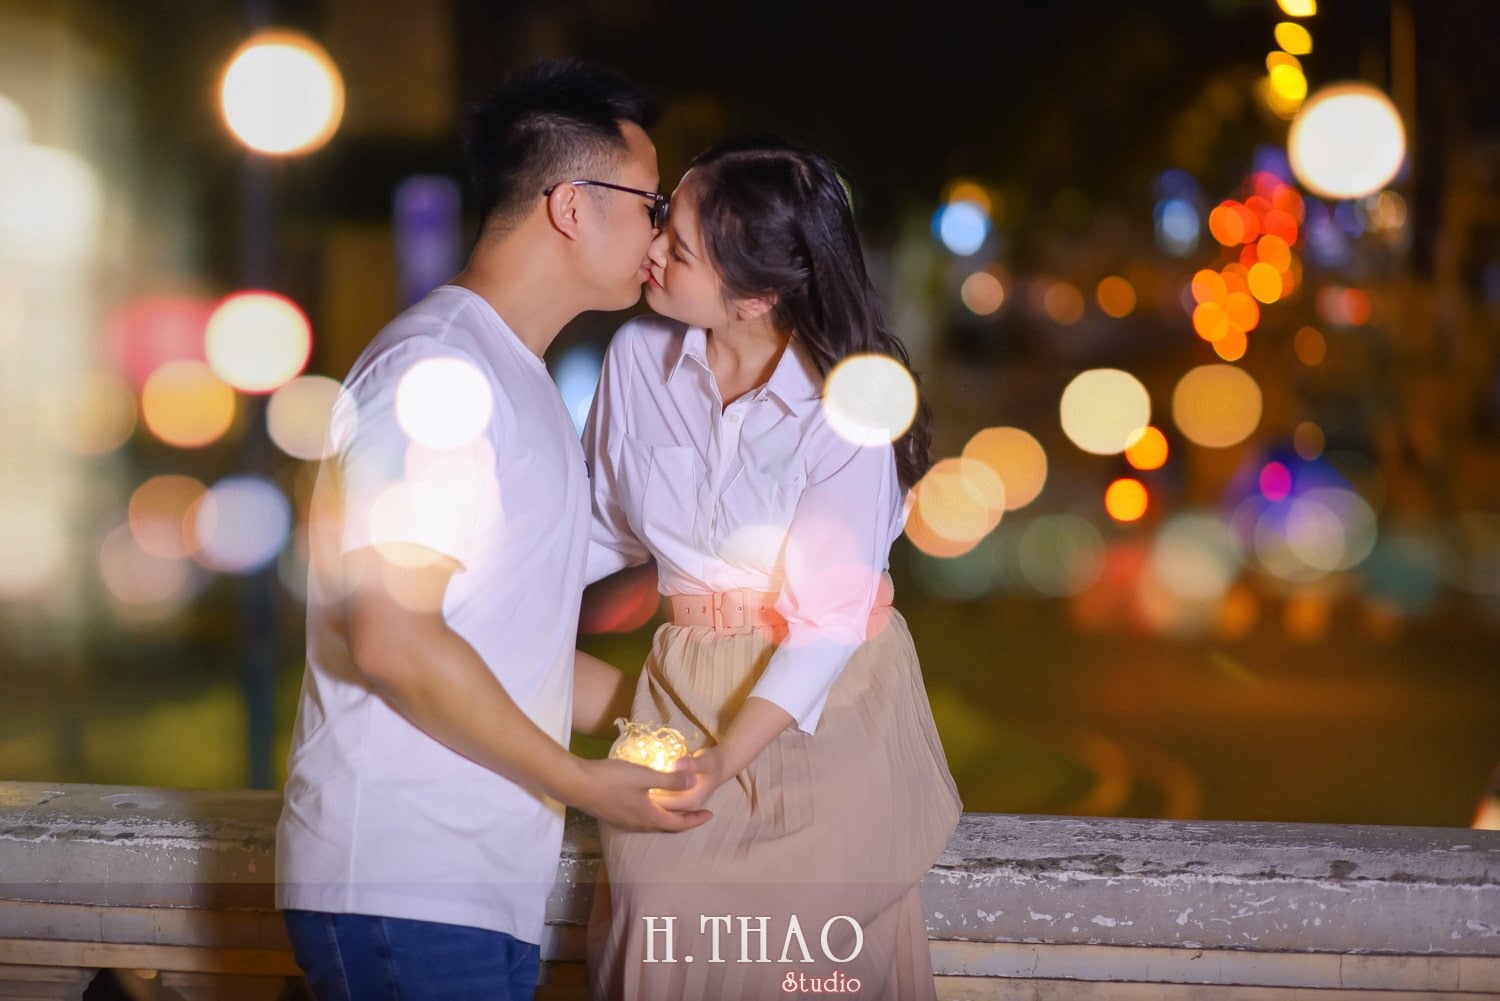 Anh chup couple ban dem 8 min 1 - #2 Ý tưởng chụp ảnh ban đêm đẹp lung linh – HThao Studio